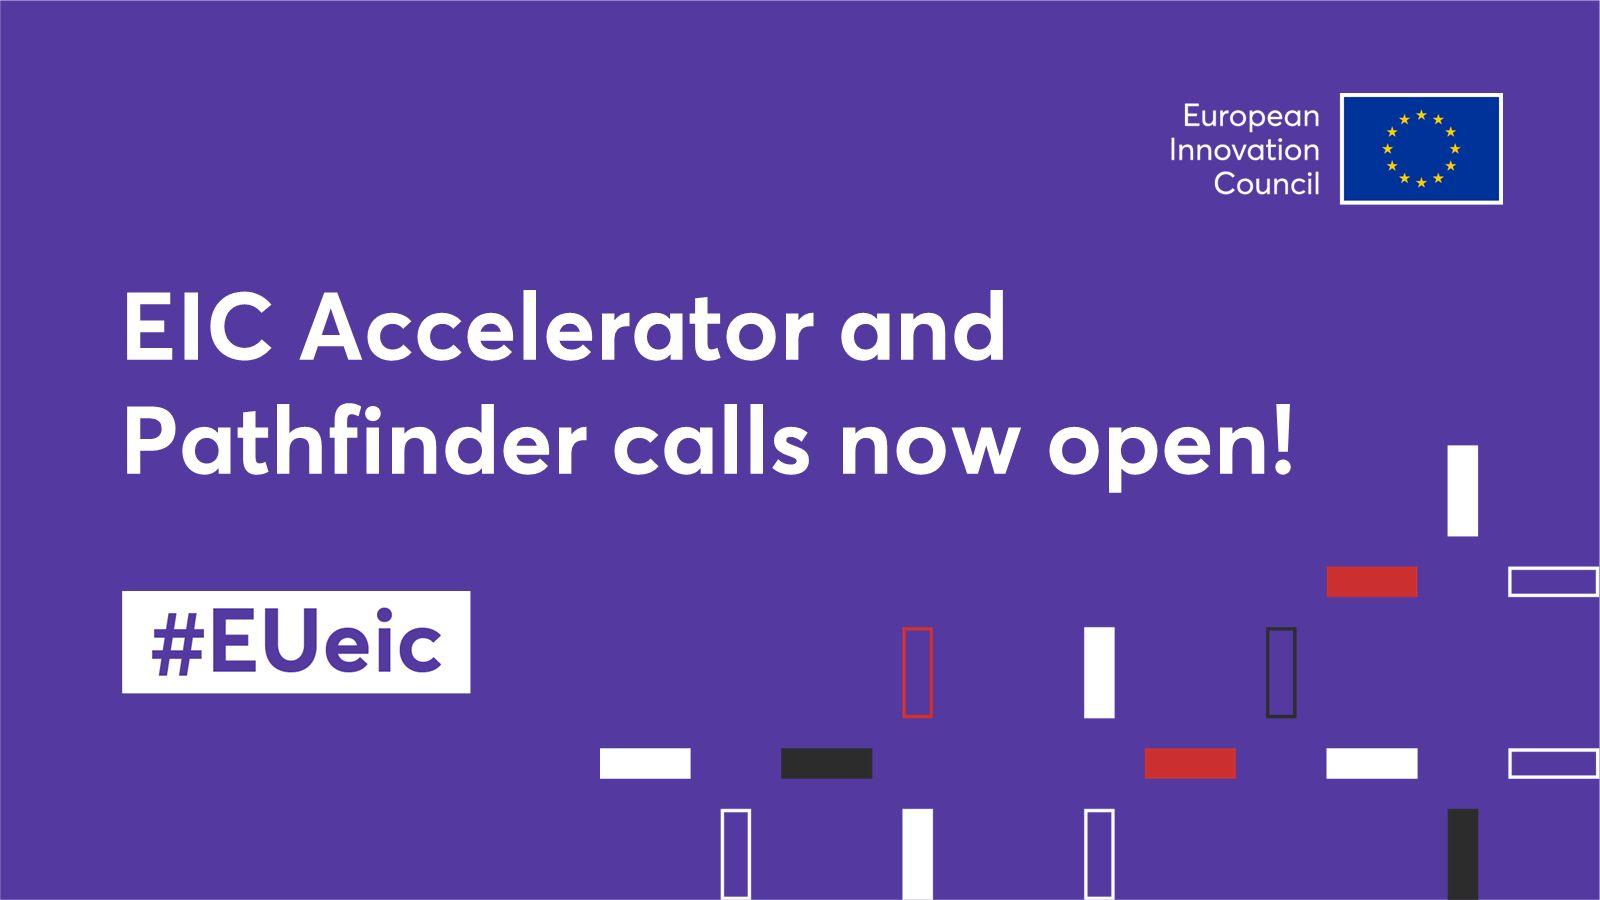 First European Innovation Council Accelerator calls open